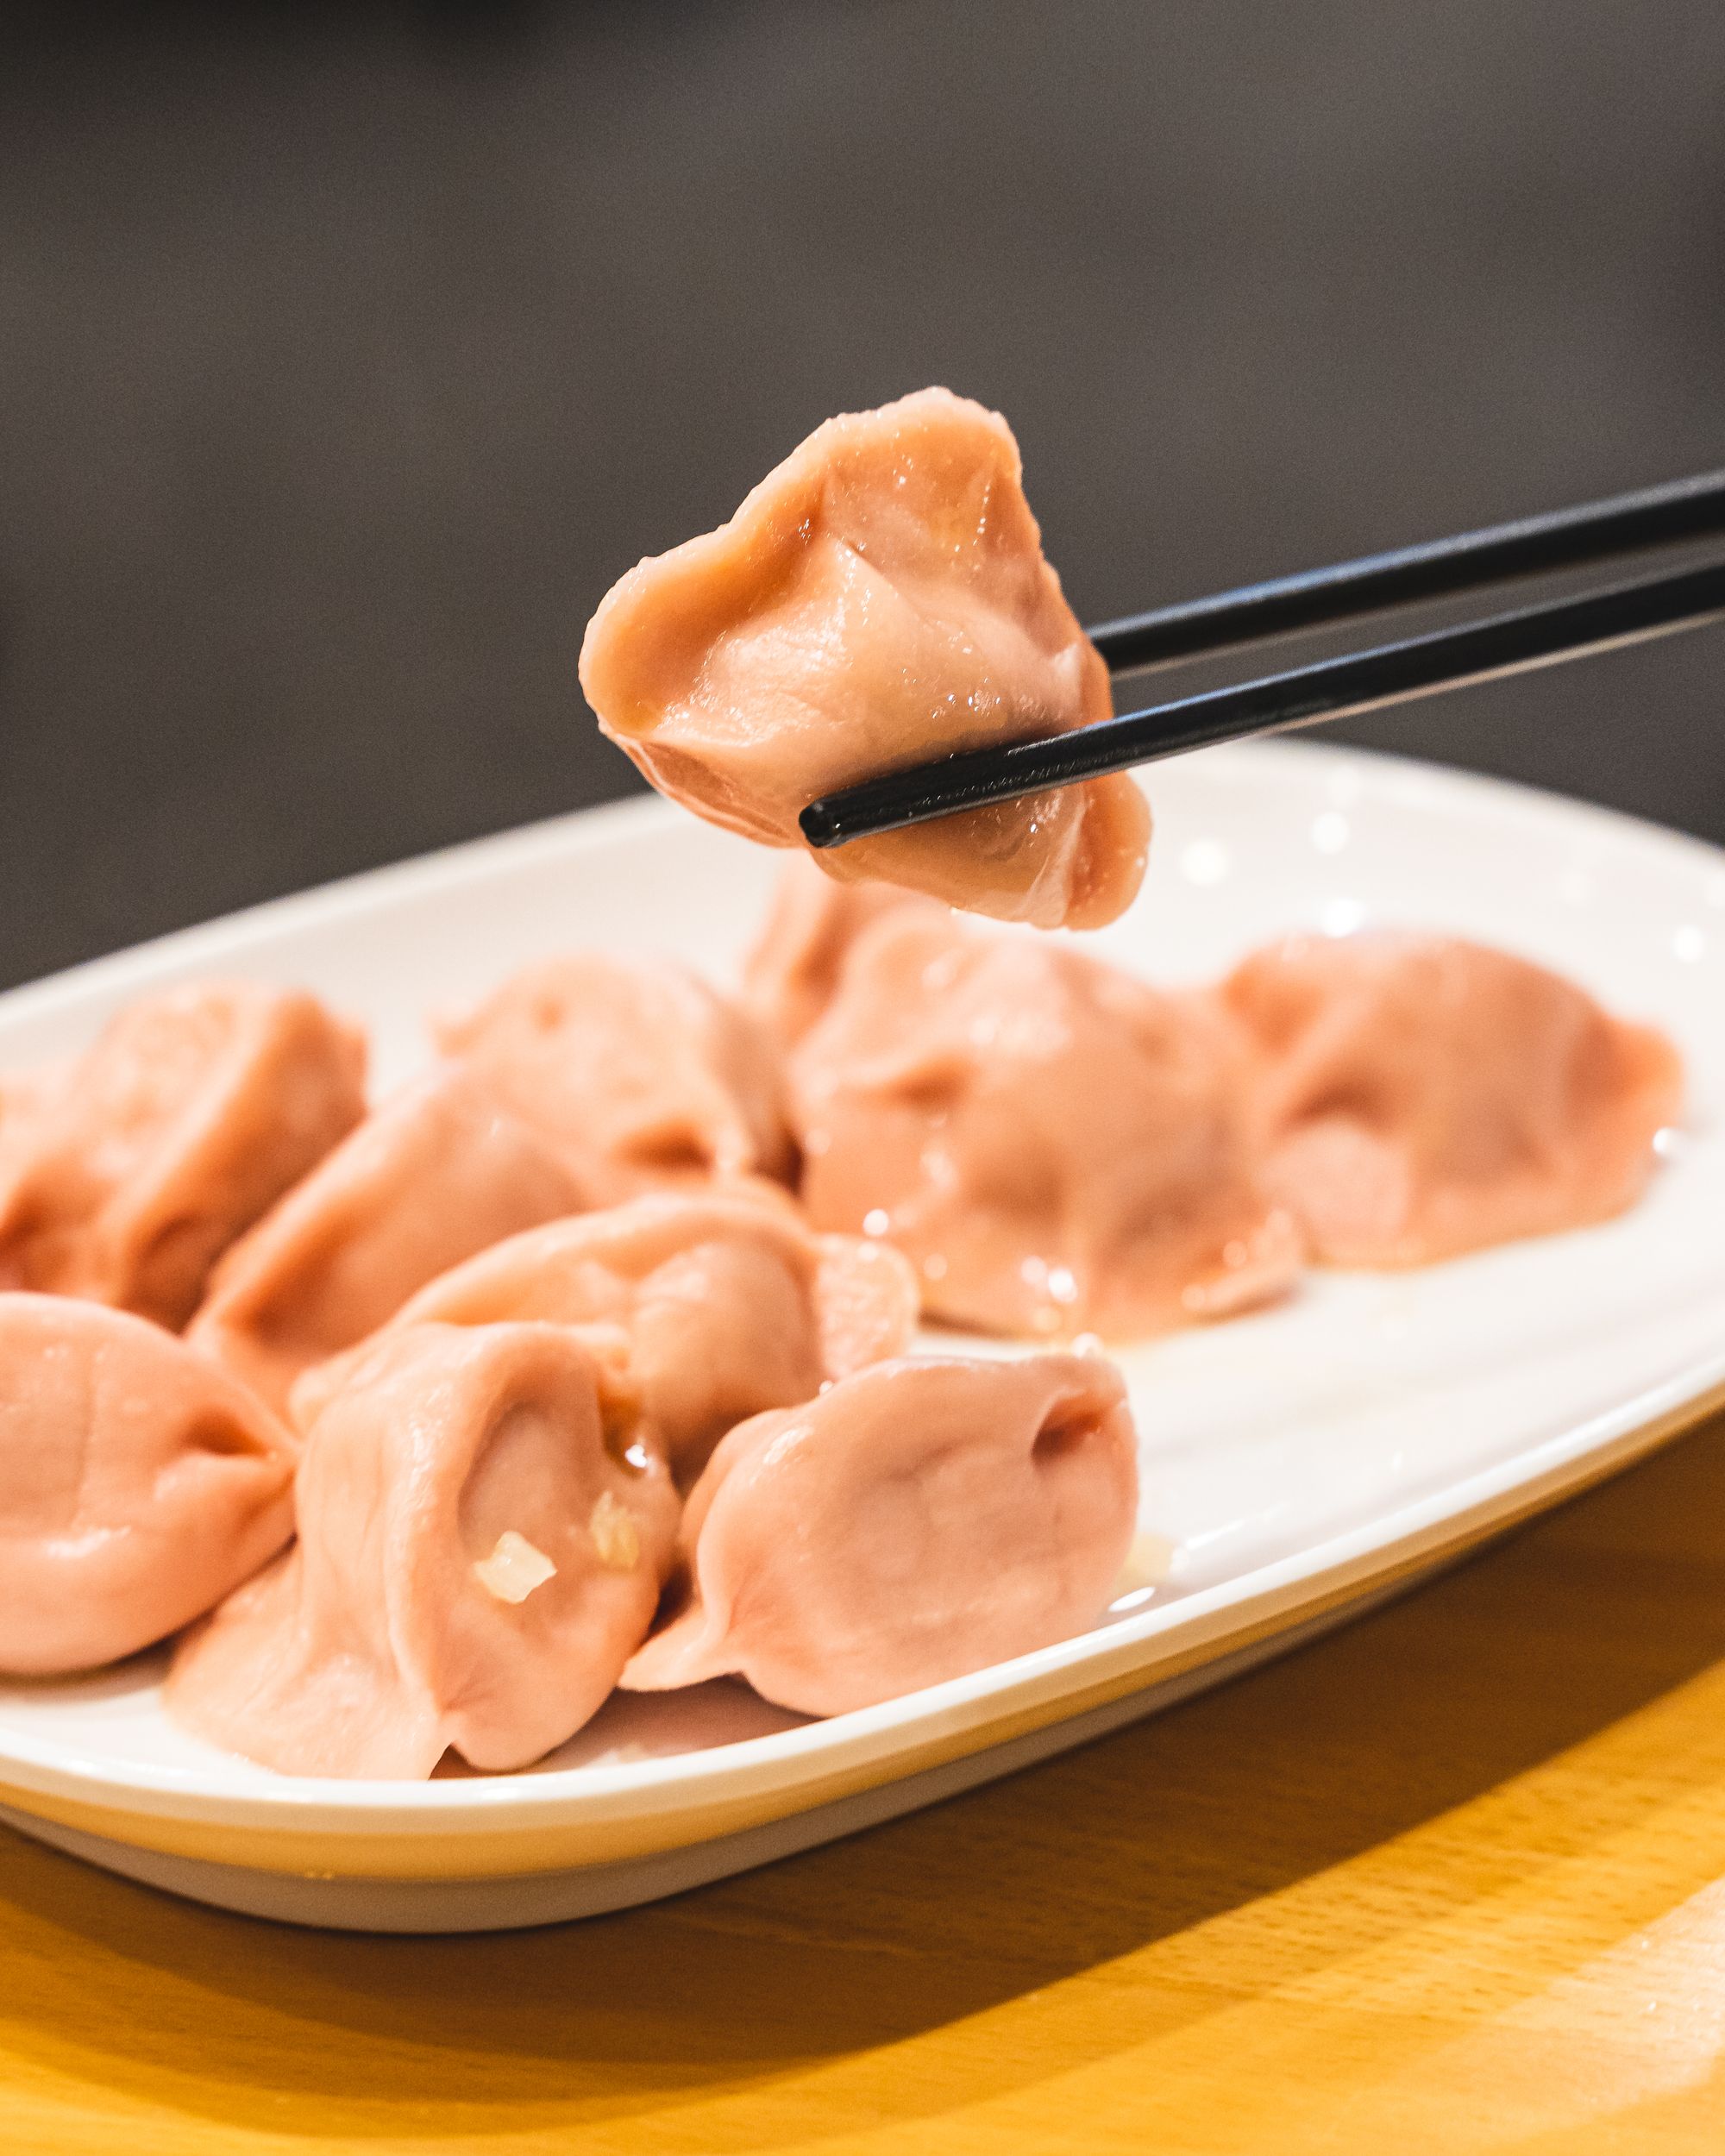 Close up of a chopstick holding up dumplings